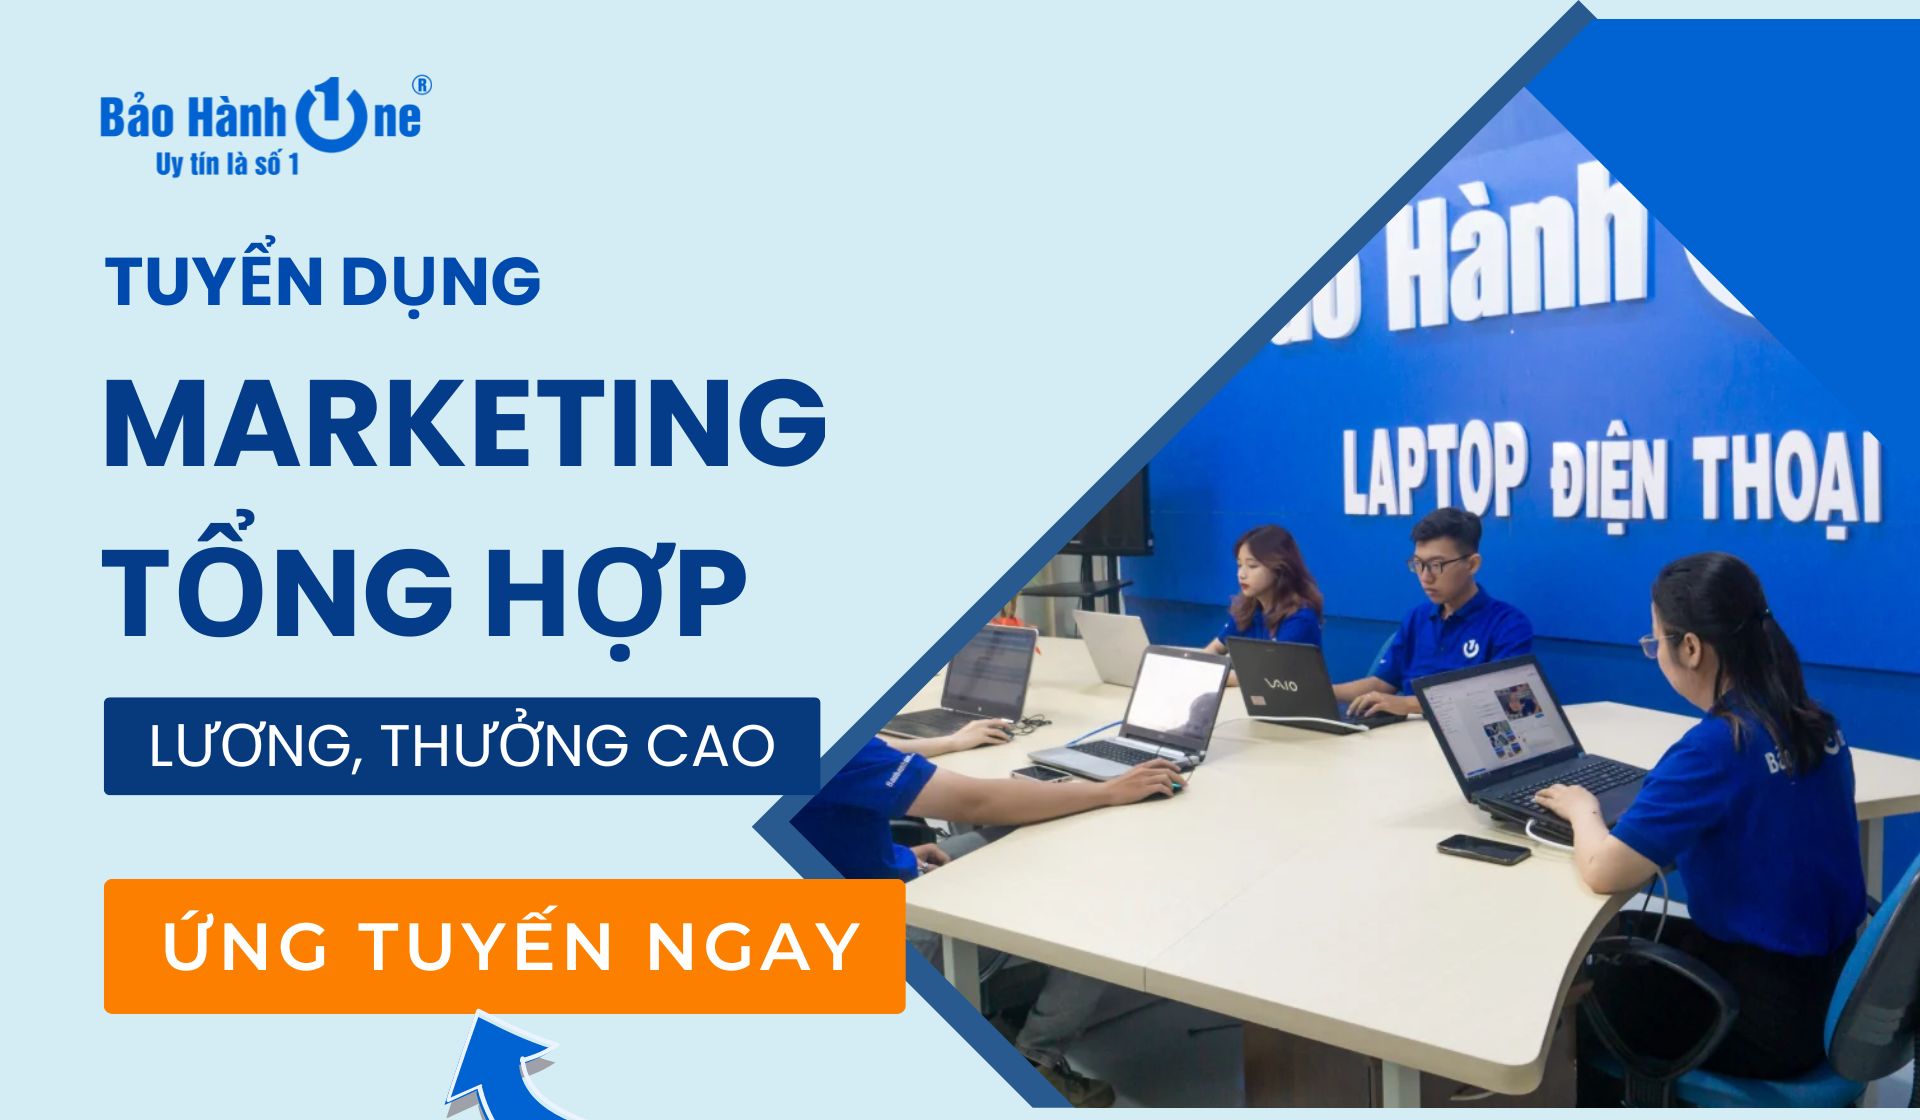 Tuyển dụng Chuyên Viên Marketing Tổng Hợp lương hấp dẫn - Hồ Chí Minh